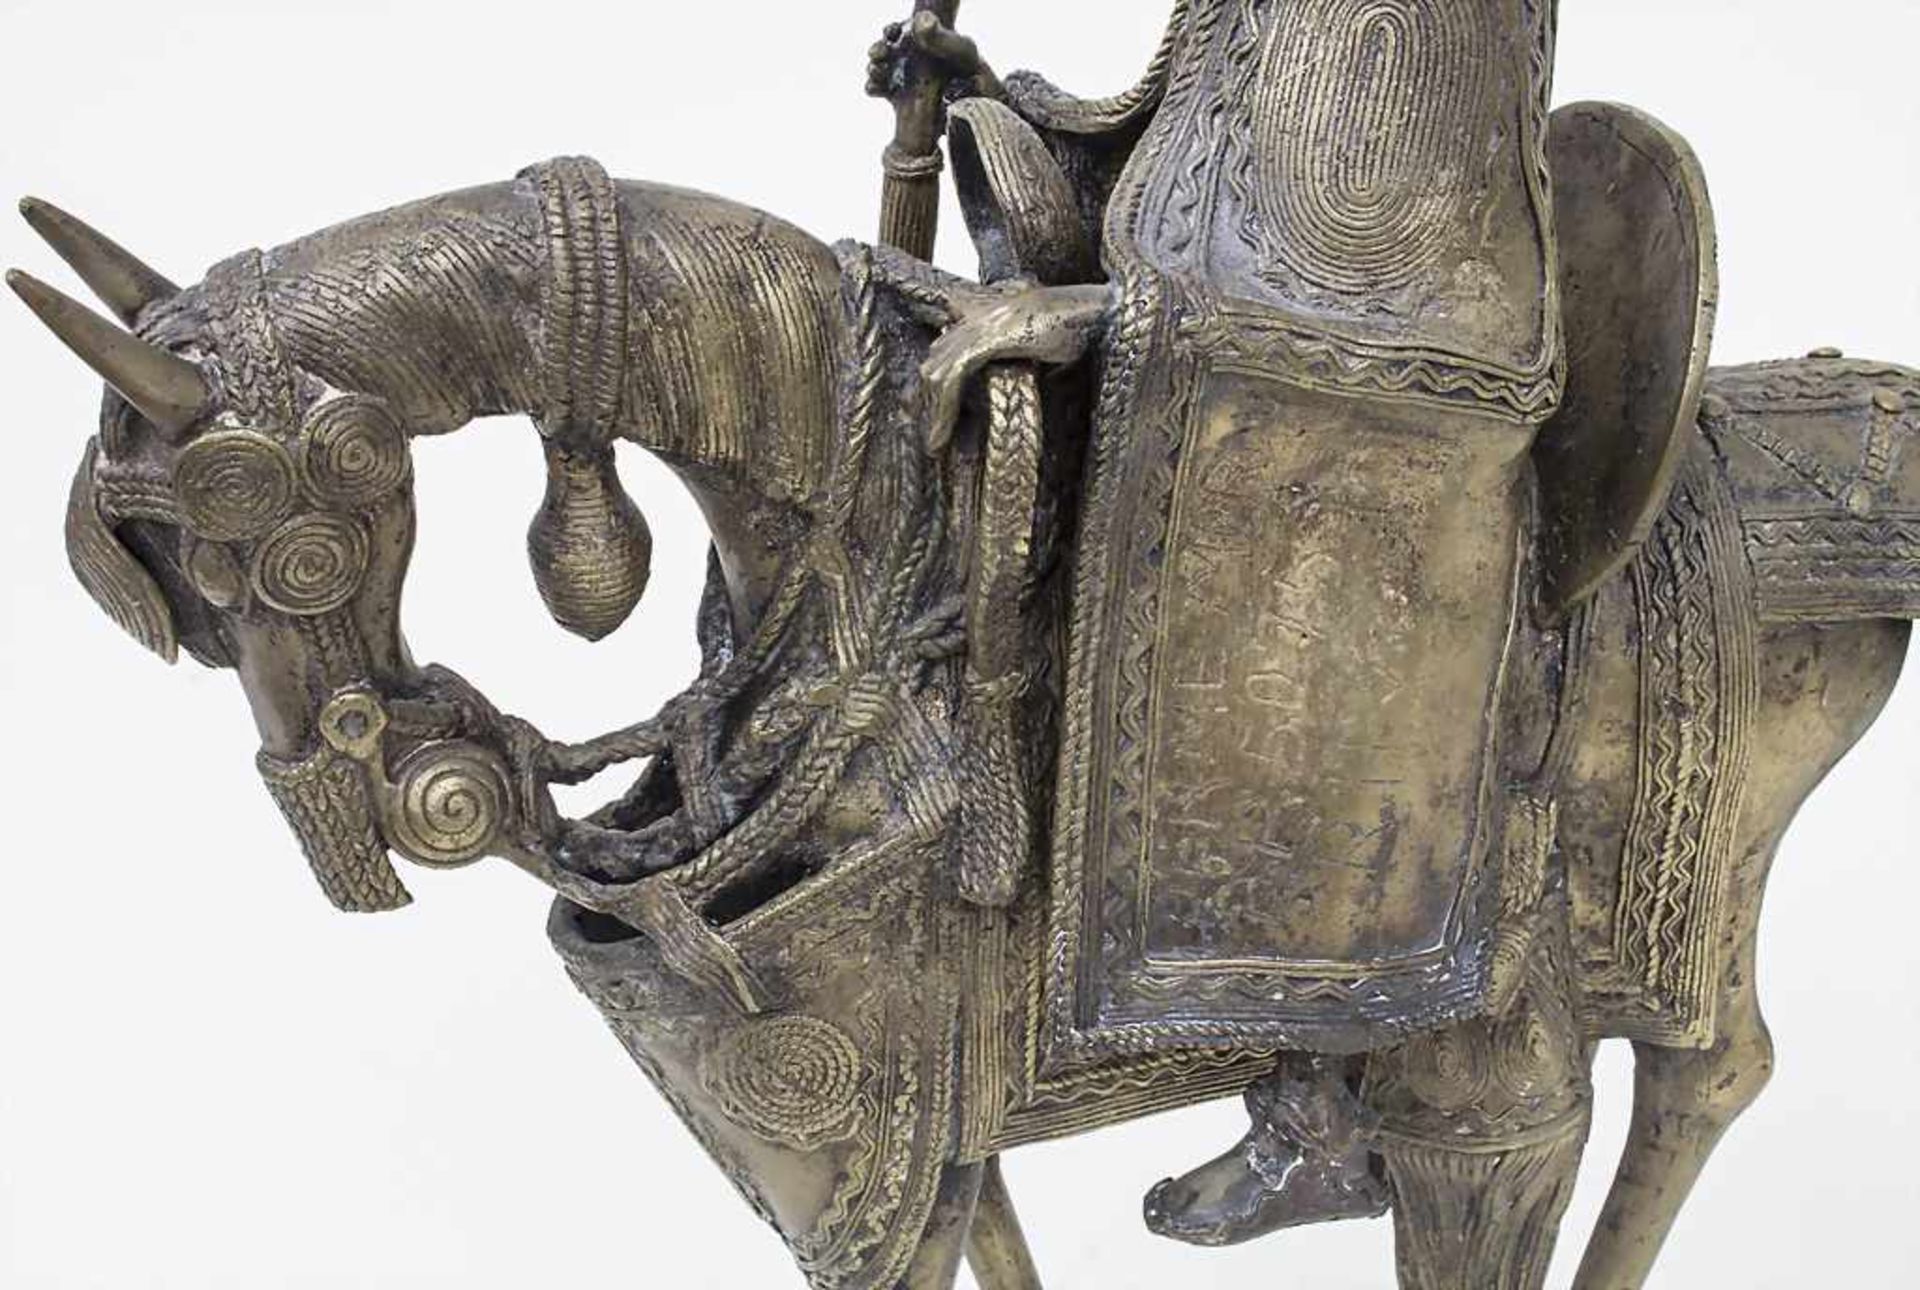 Würdenträger auf Pferd / A Dignitary on the horse, Äthiopien, 20. Jh. Material: Bronze, Höhe: 41 cm, - Bild 3 aus 4